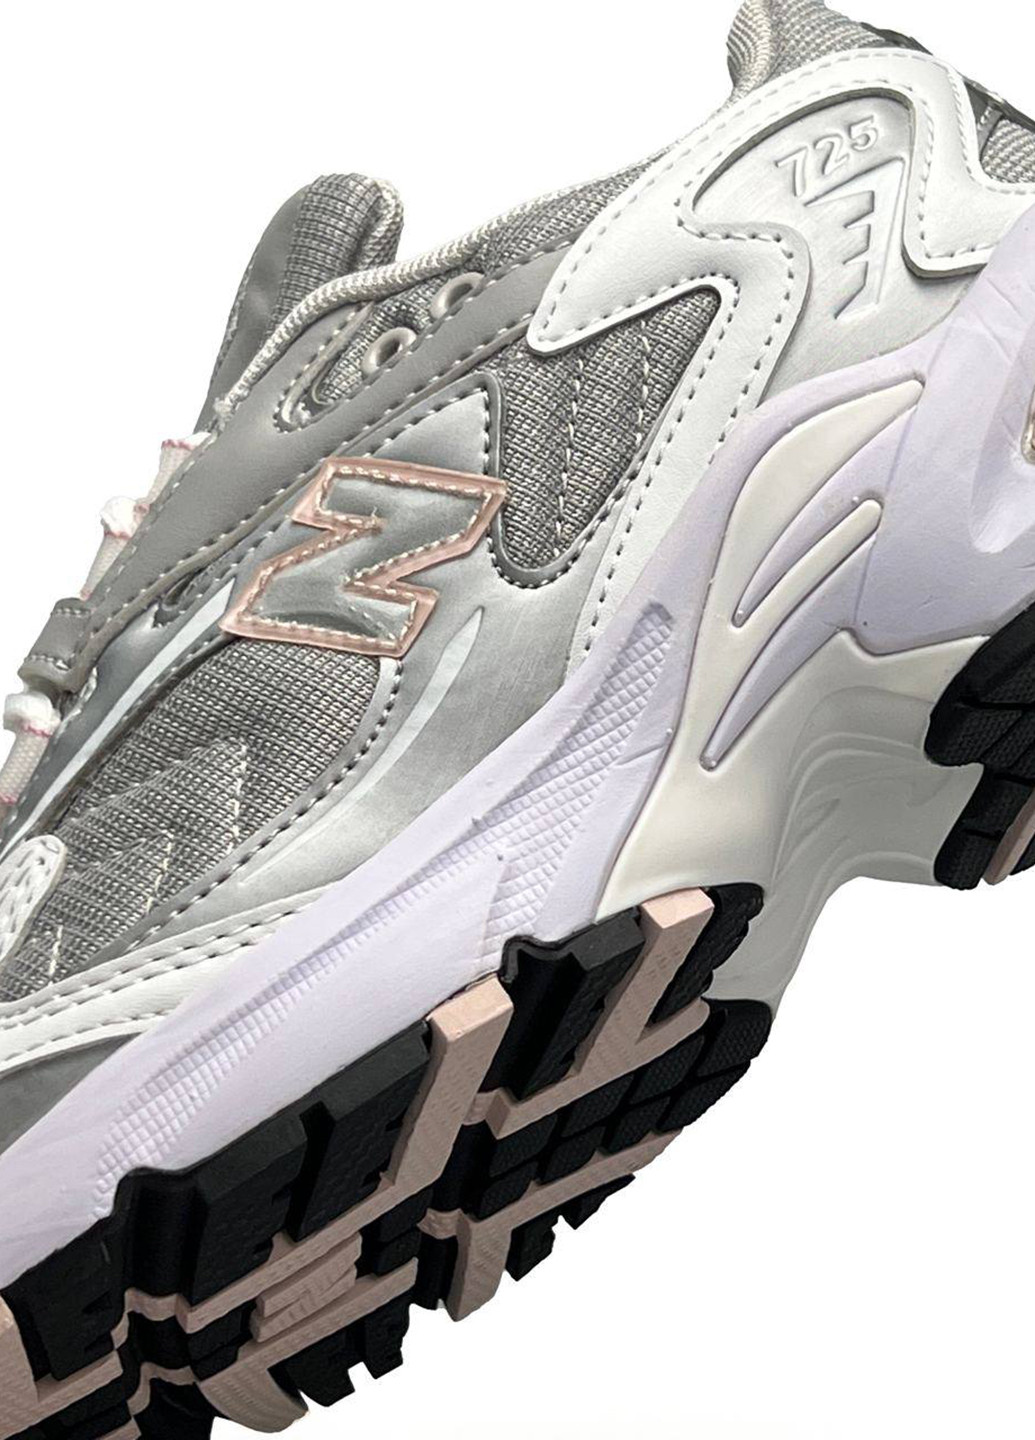 Цветные демисезонные кроссовки New Balance 725 Grey Silver Pink